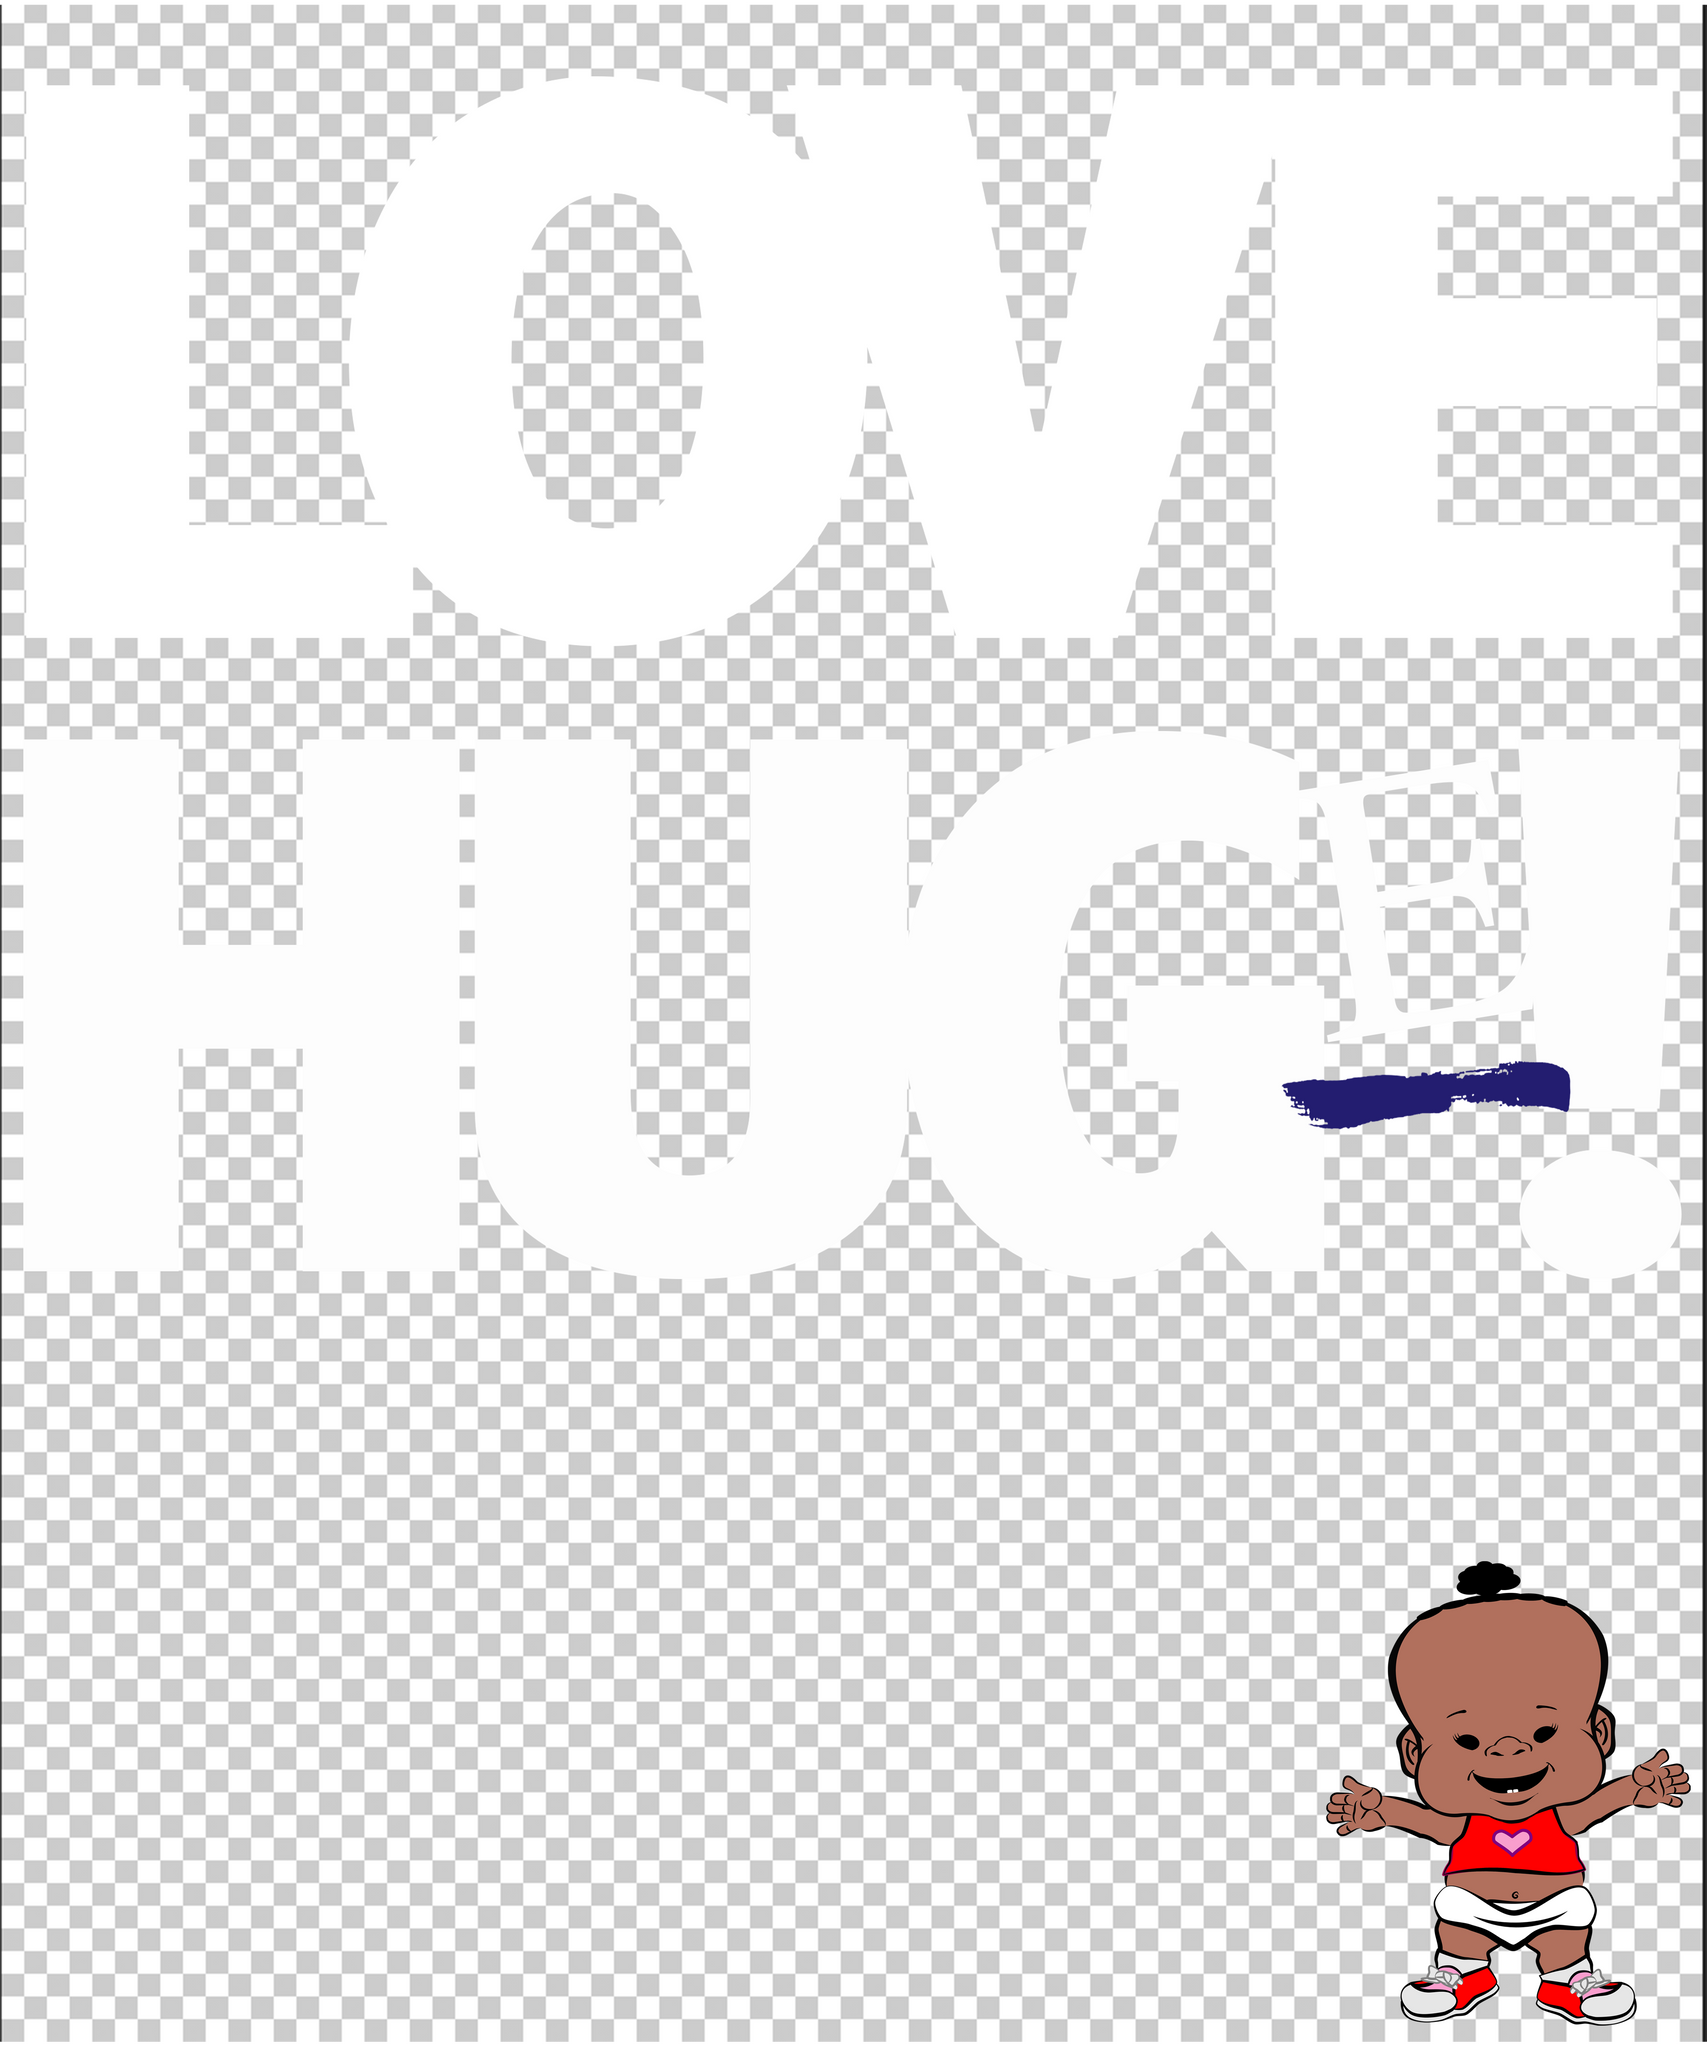 PBYZ1274_Love_Hug(e)_girl_9_Red